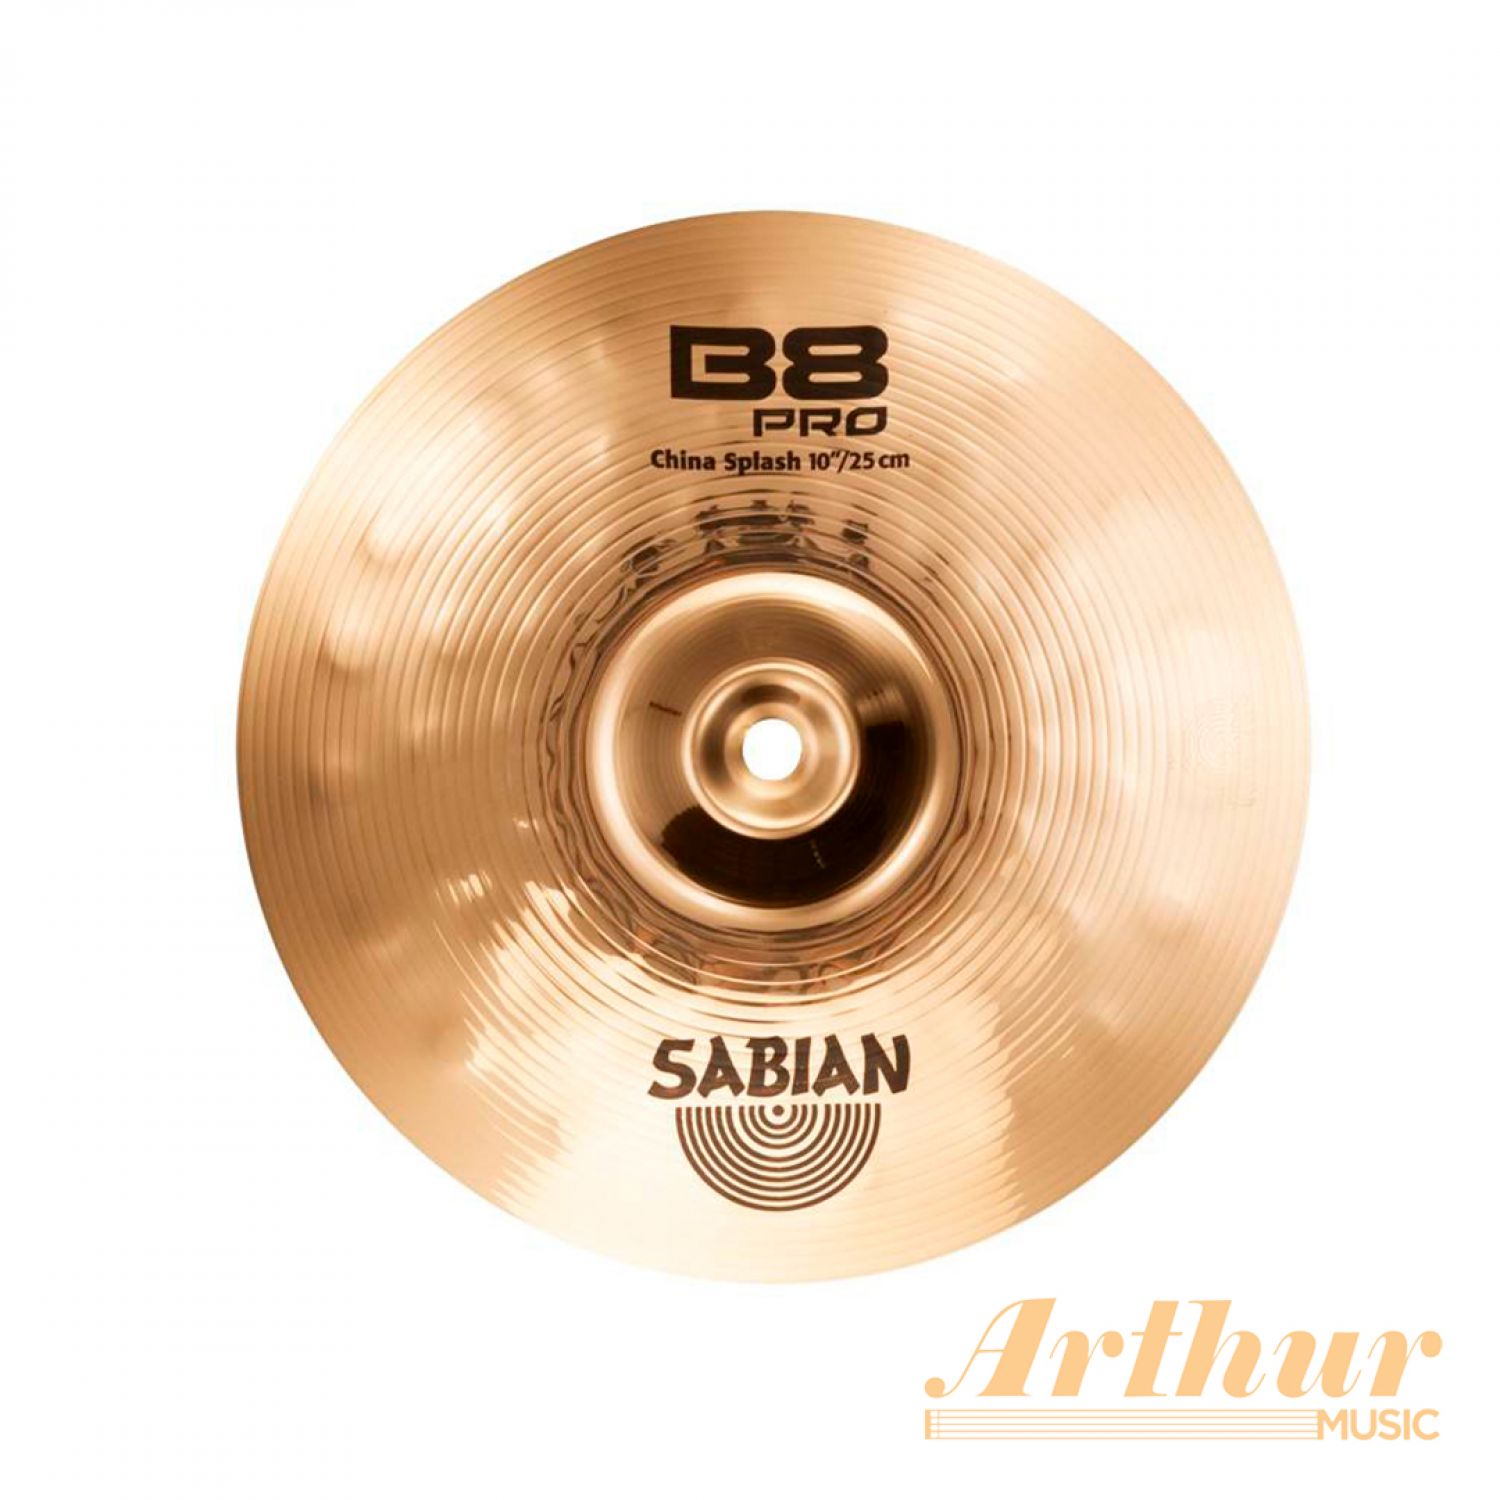 Sabian B8 Pro China Splash 10” « China « Baterias & Percusión 